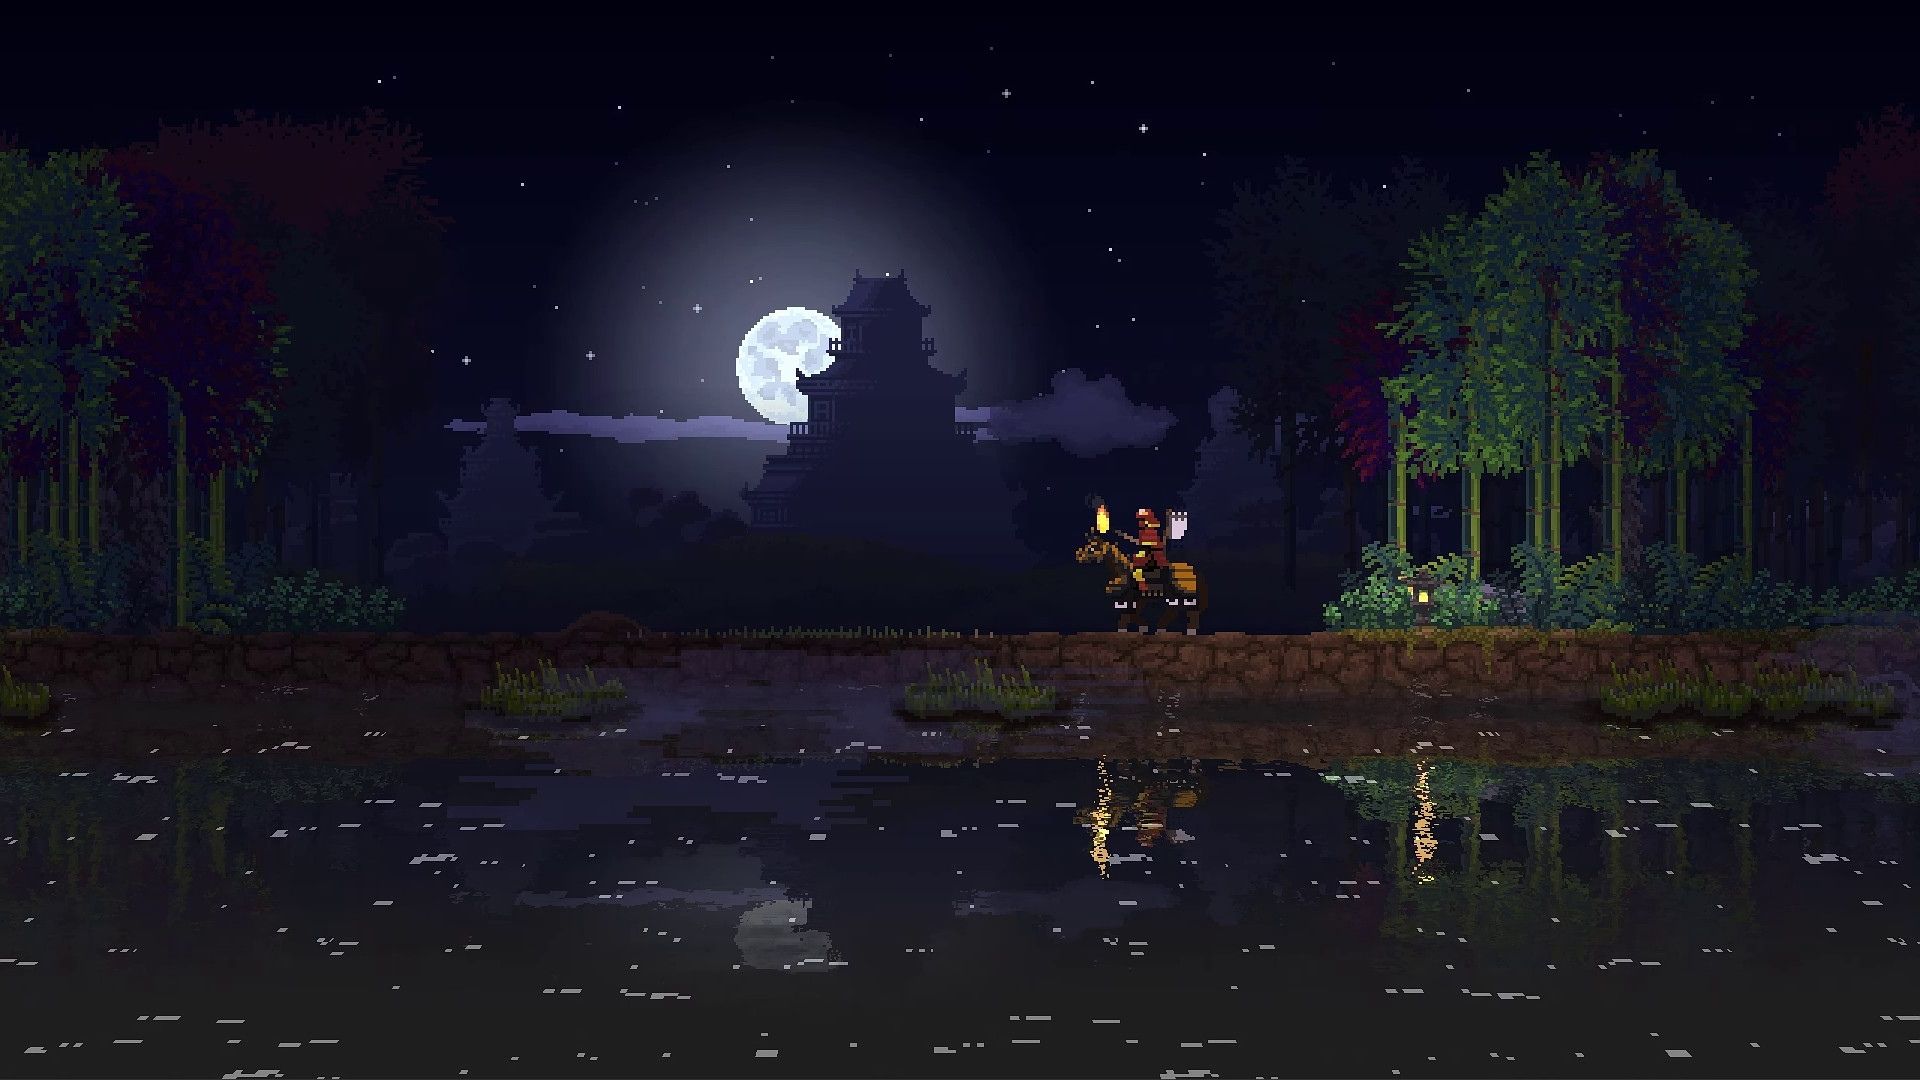 צילום מסך מממלכה שני כתרים, מראה אדם על סוס, אגם והירח